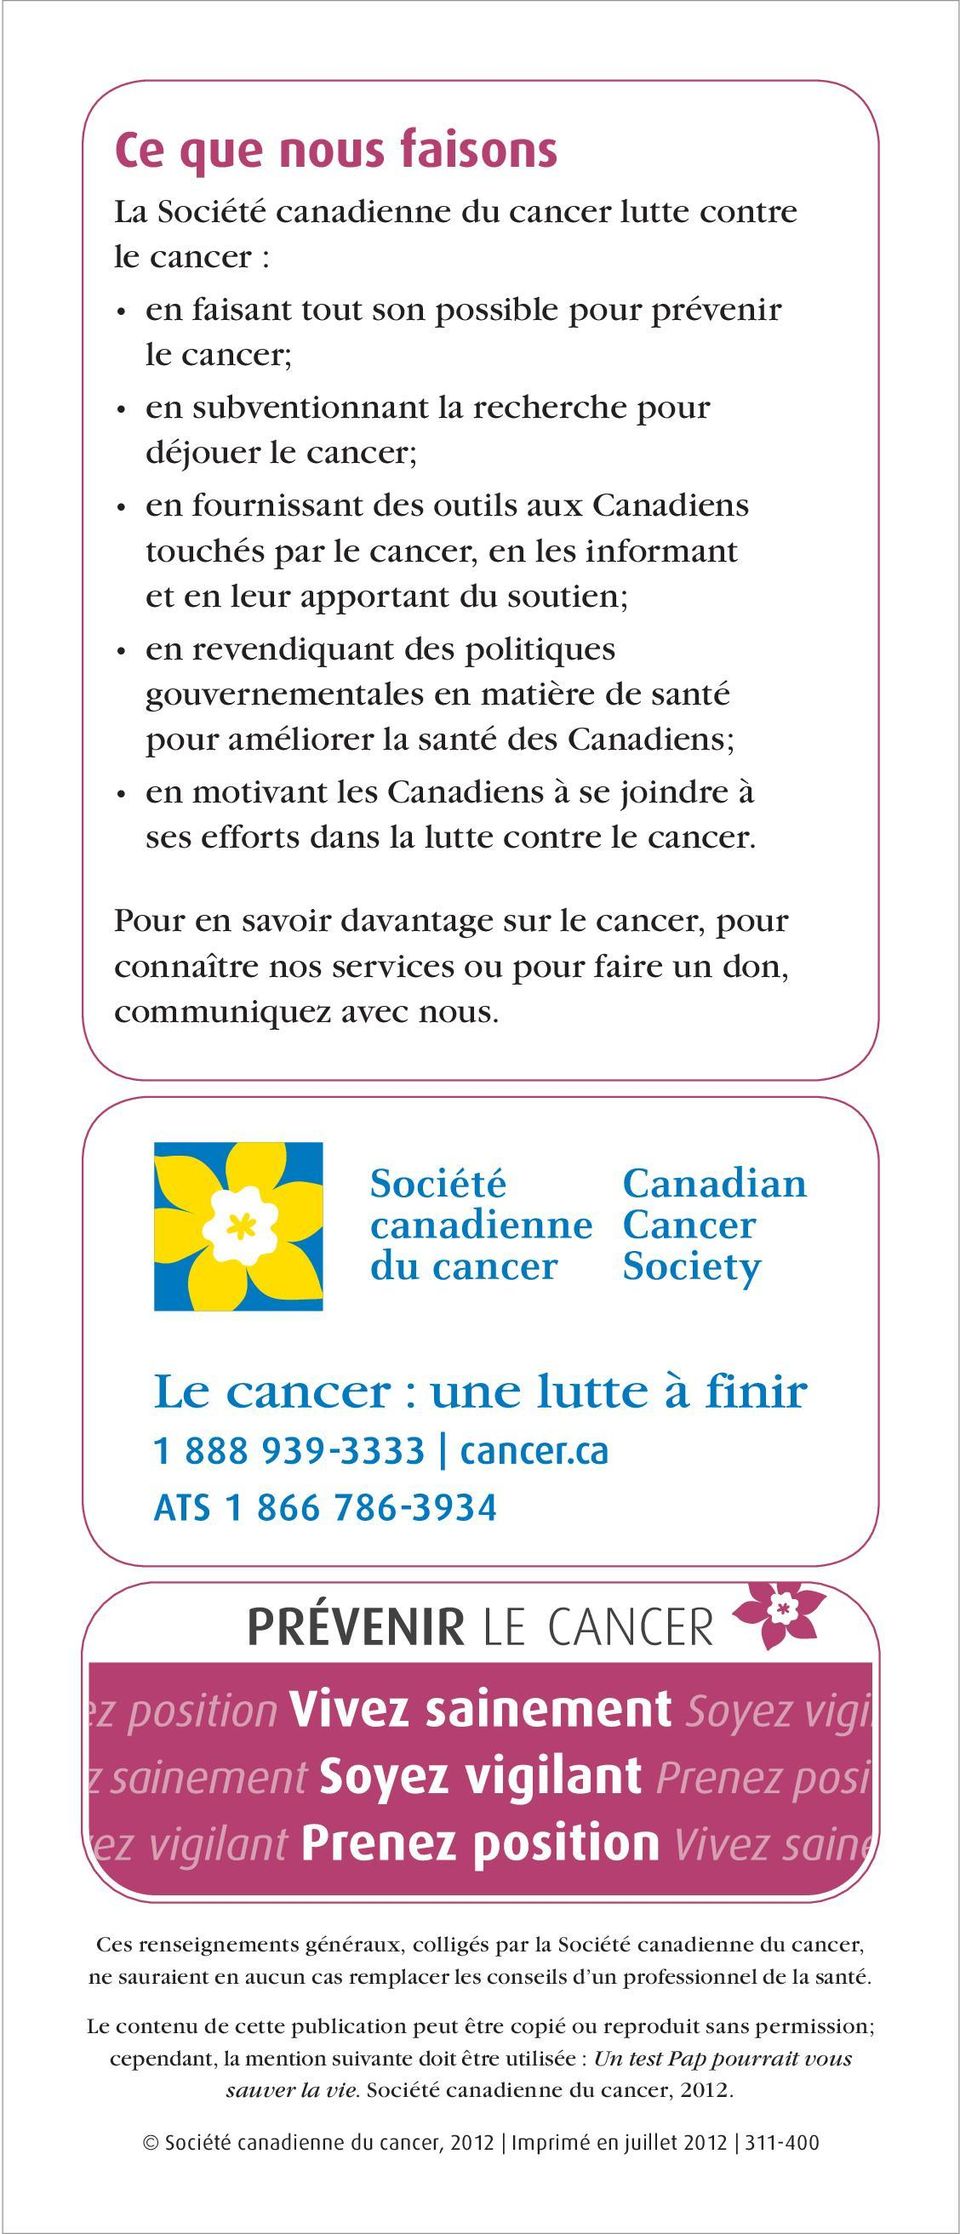 santé des Canadiens; en motivant les Canadiens à se joindre à ses efforts dans la lutte contre le cancer.